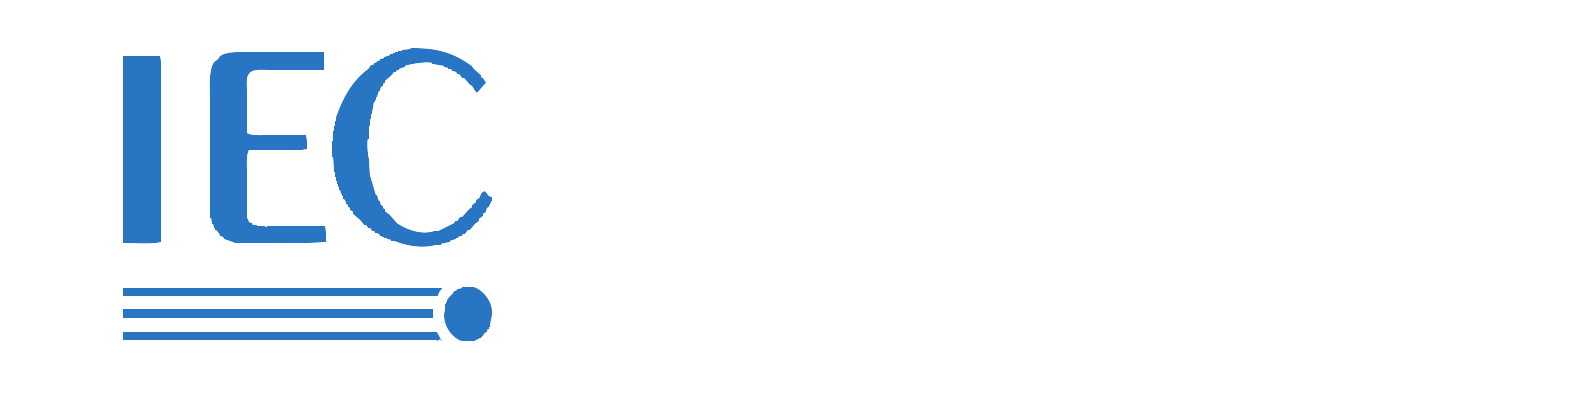 IEC 62196-2 EV 충전